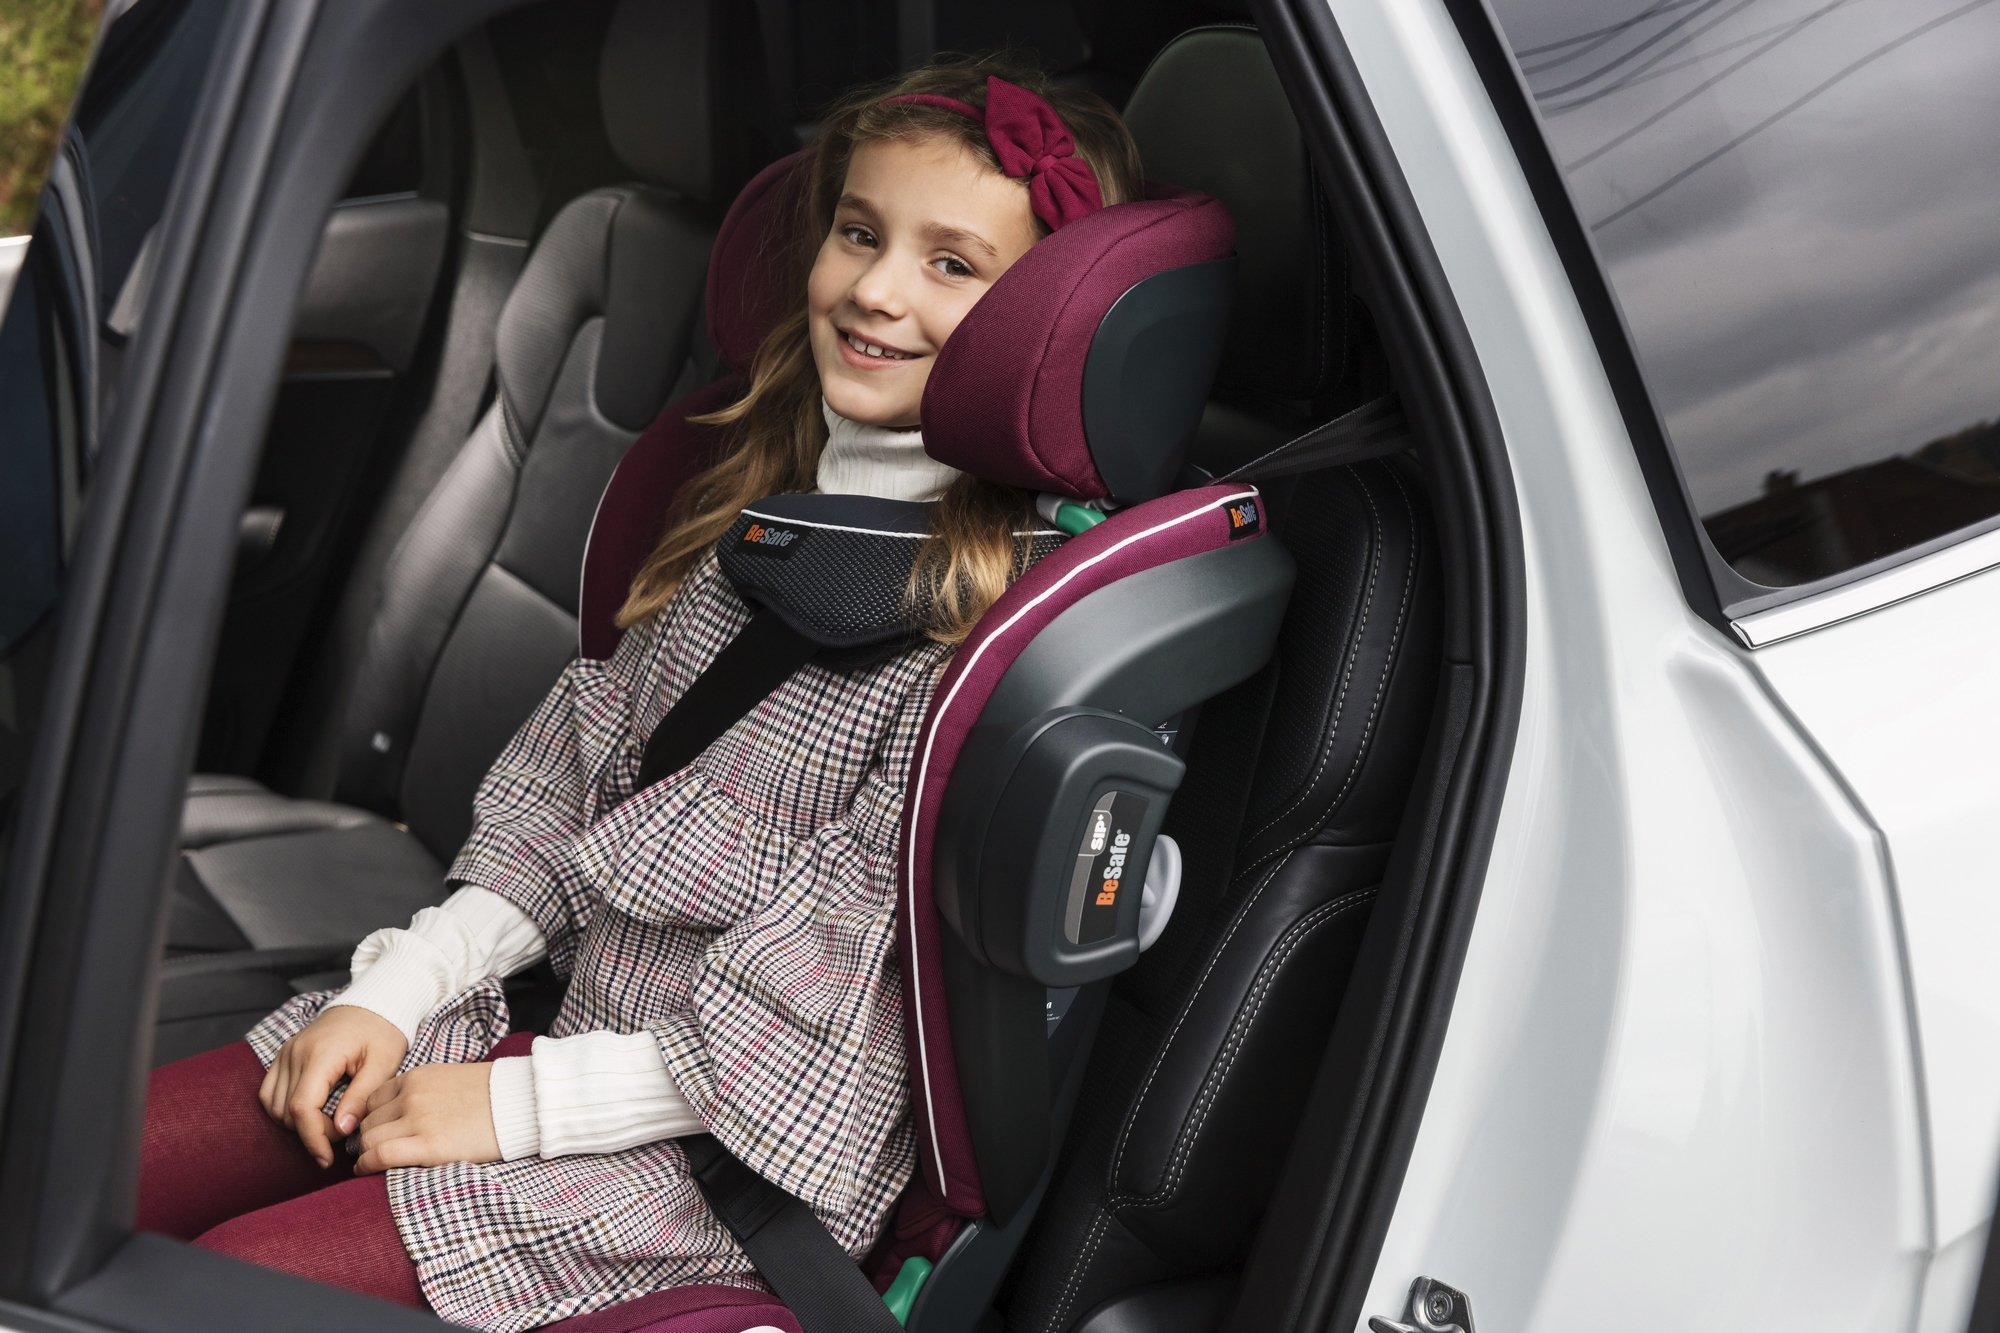 Dziewczynka siedzi w foteliku samochodowym